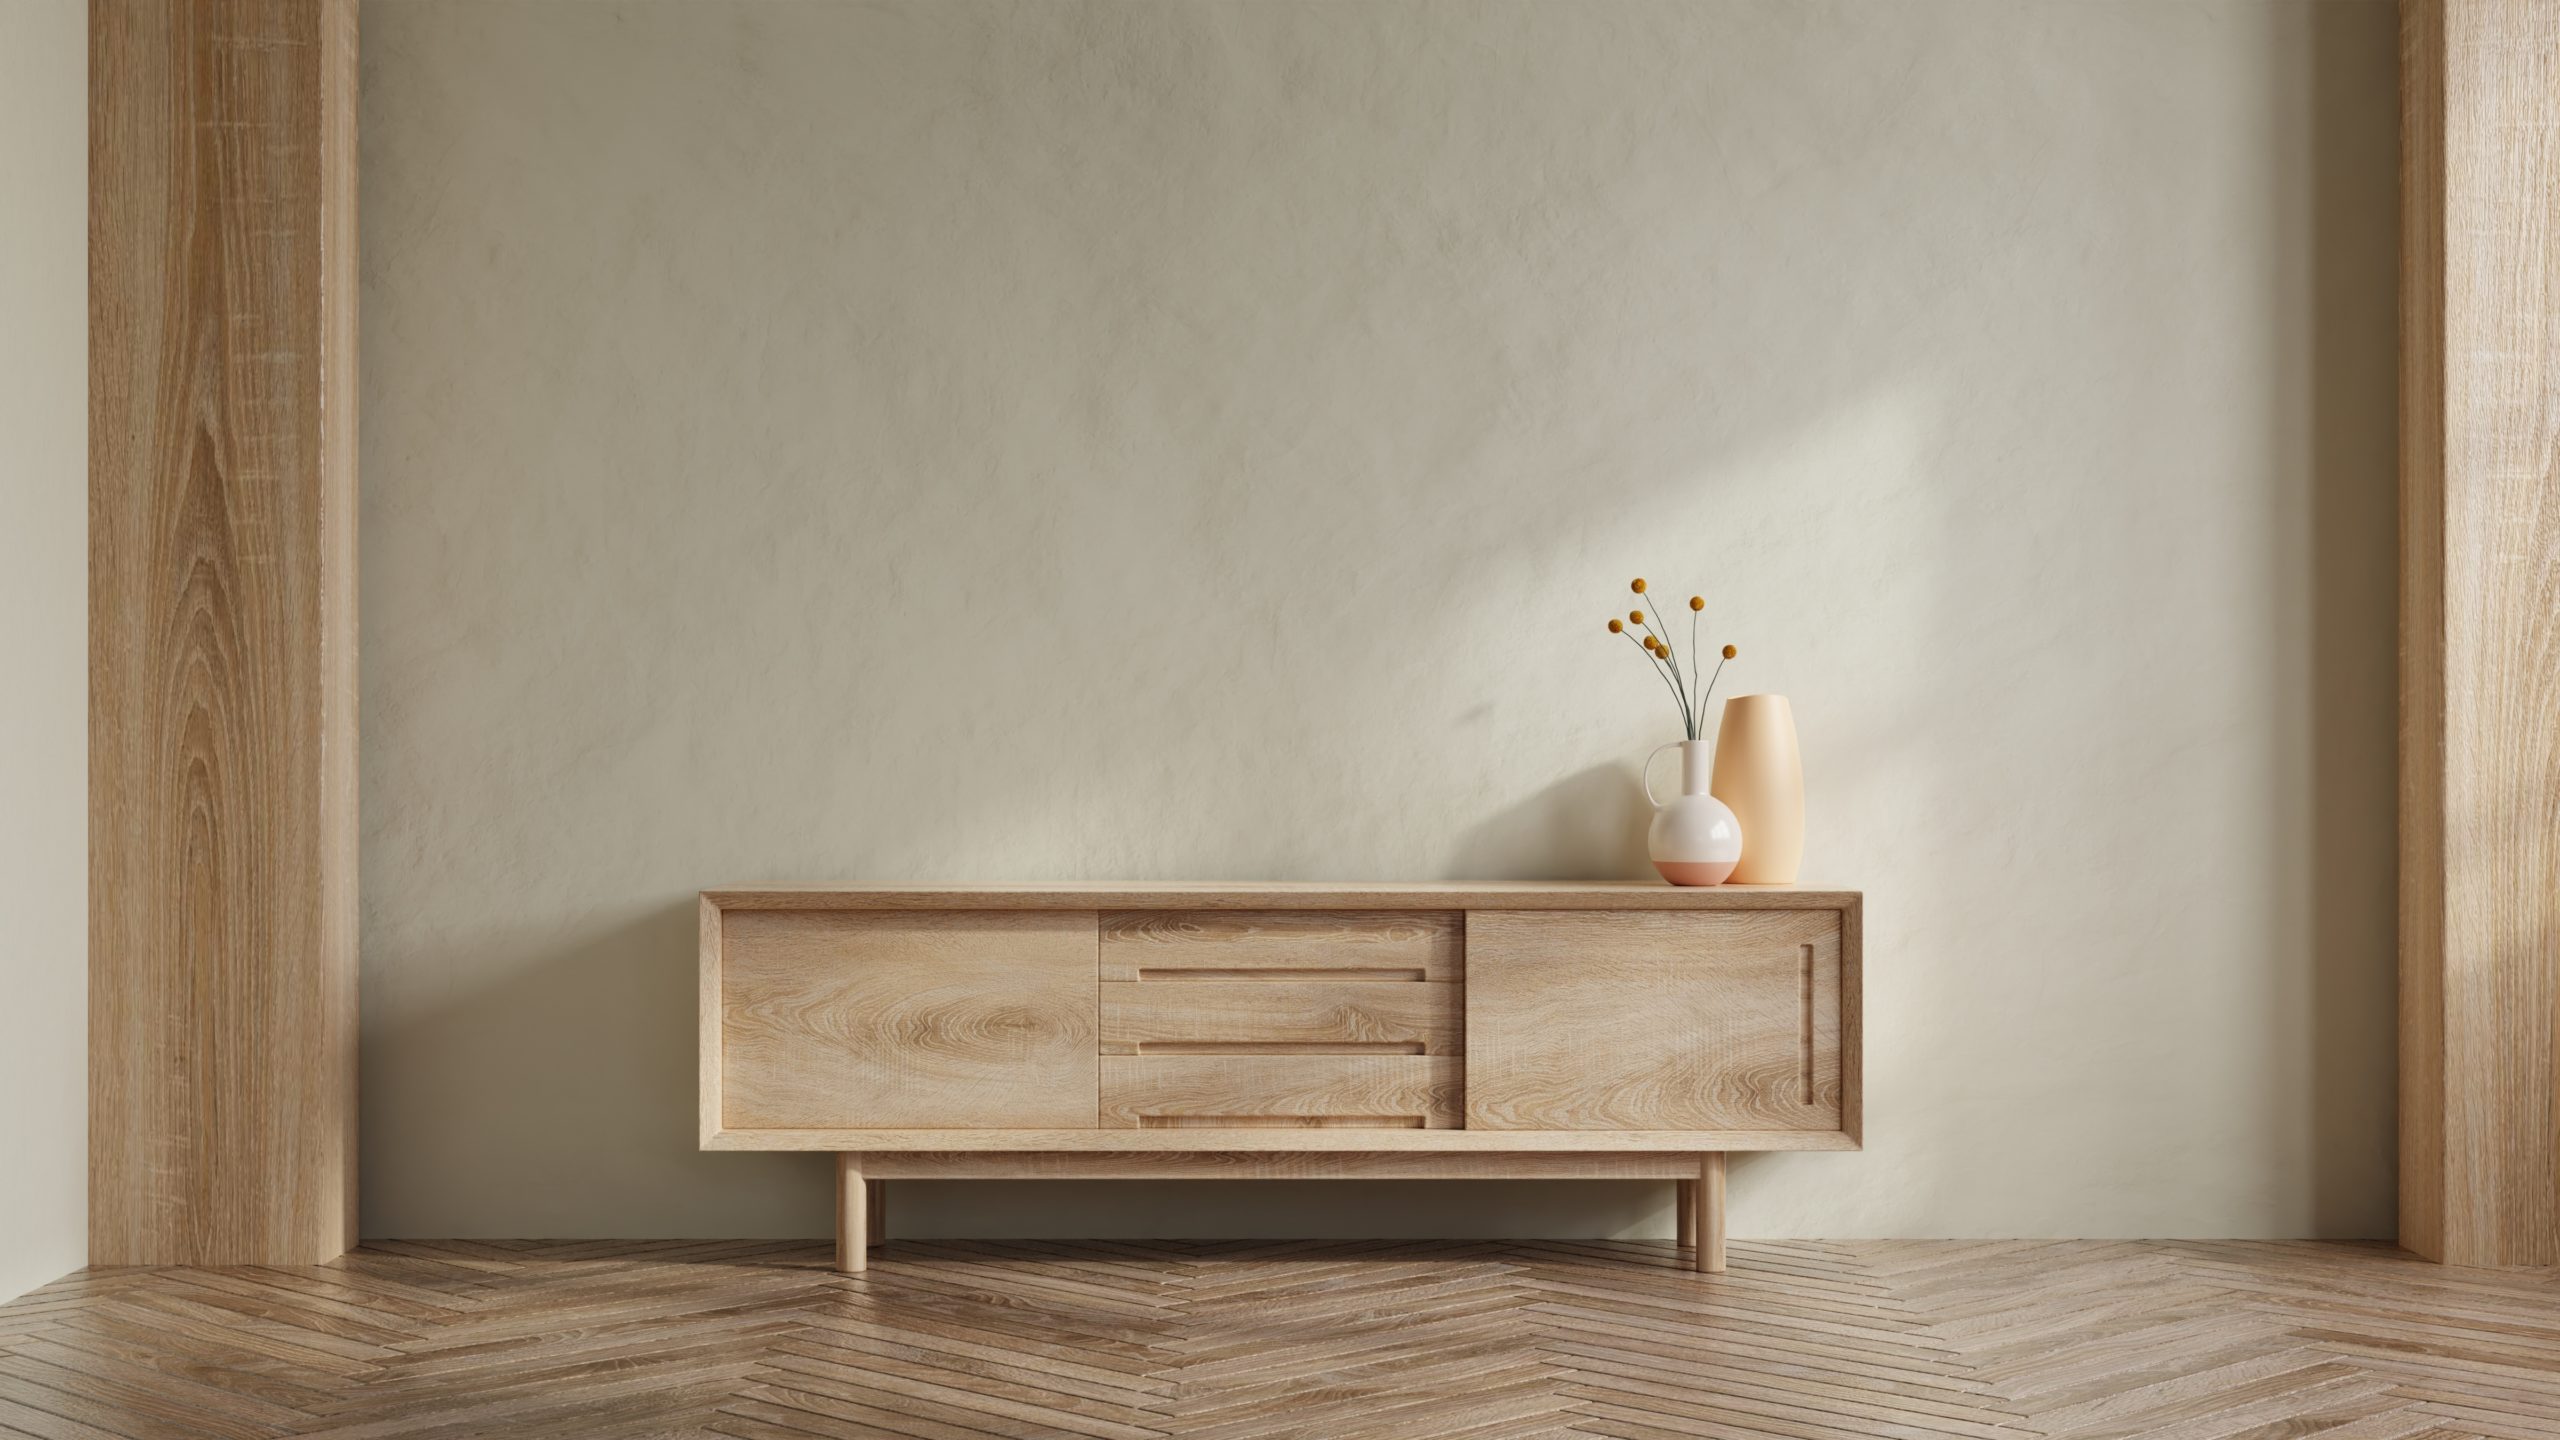 In punkto Nachhaltigkeit überzeugen meist Möbel aus Holz. Foto © Vanit่jan stock adobe